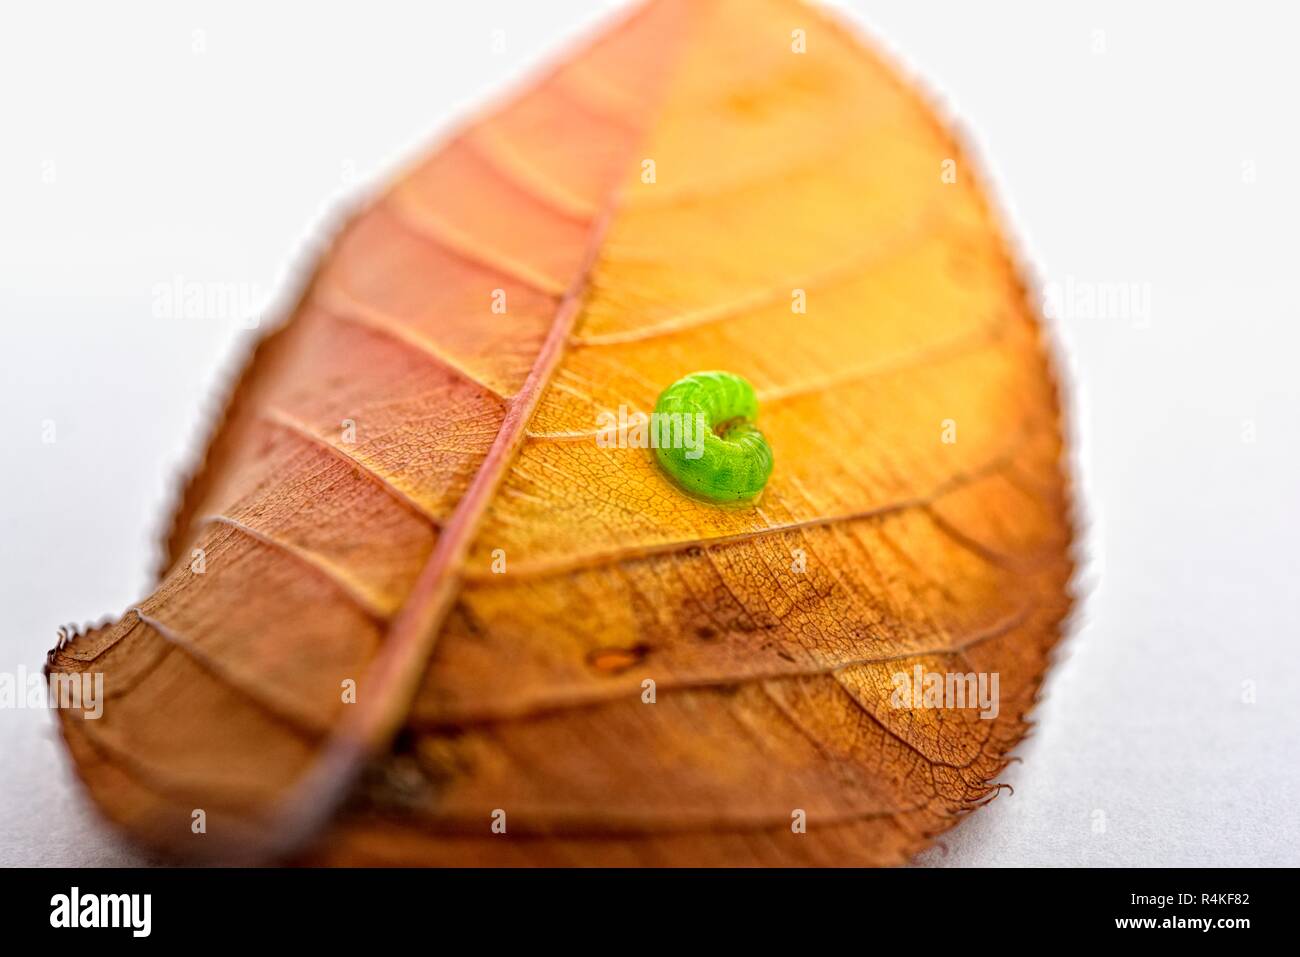 Grüne Raupe auf Herbst Blatt Nahaufnahme Makro Stockfoto